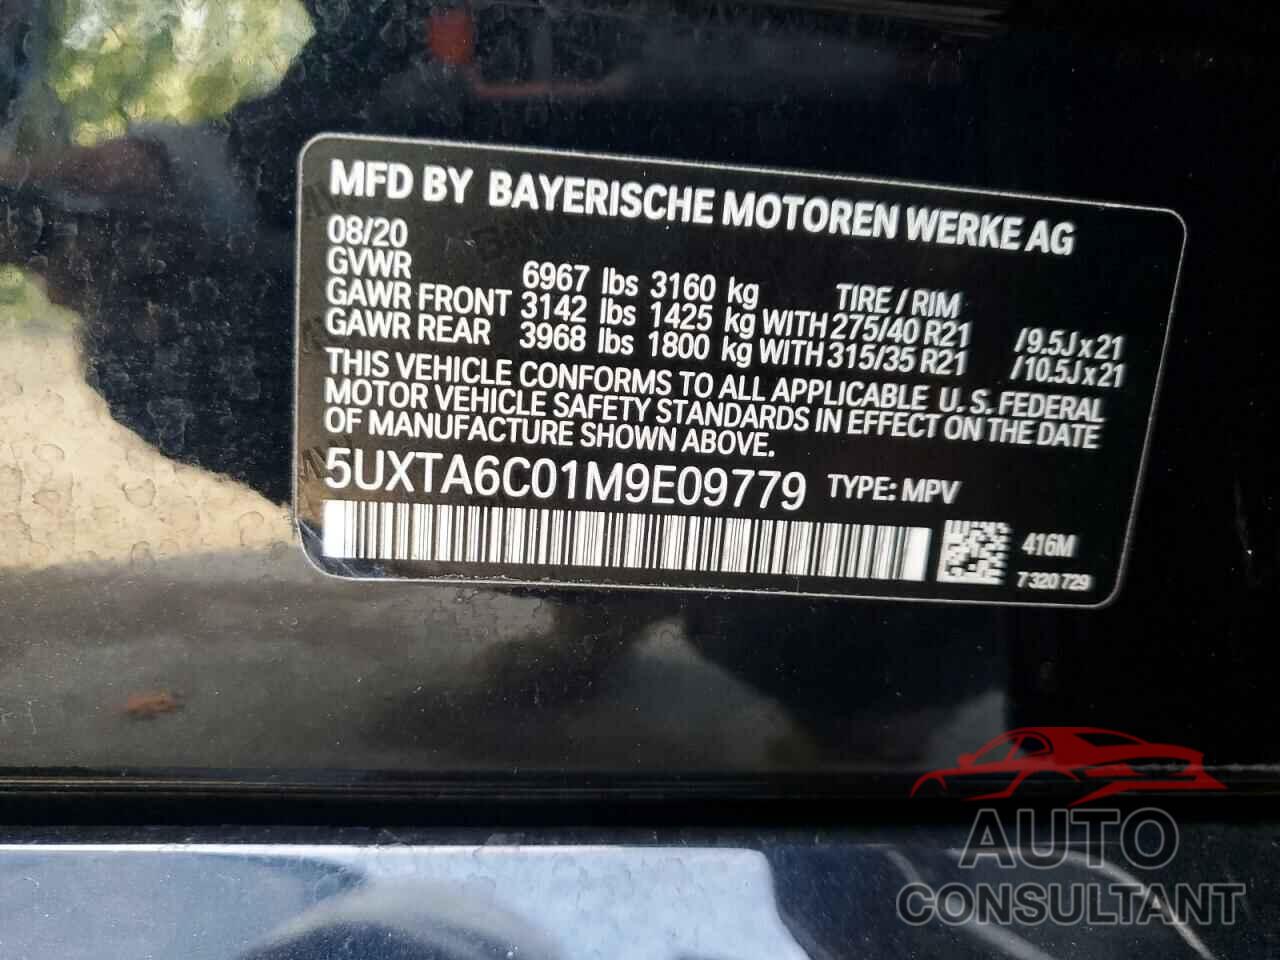 BMW X5 2021 - 5UXTA6C01M9E09779